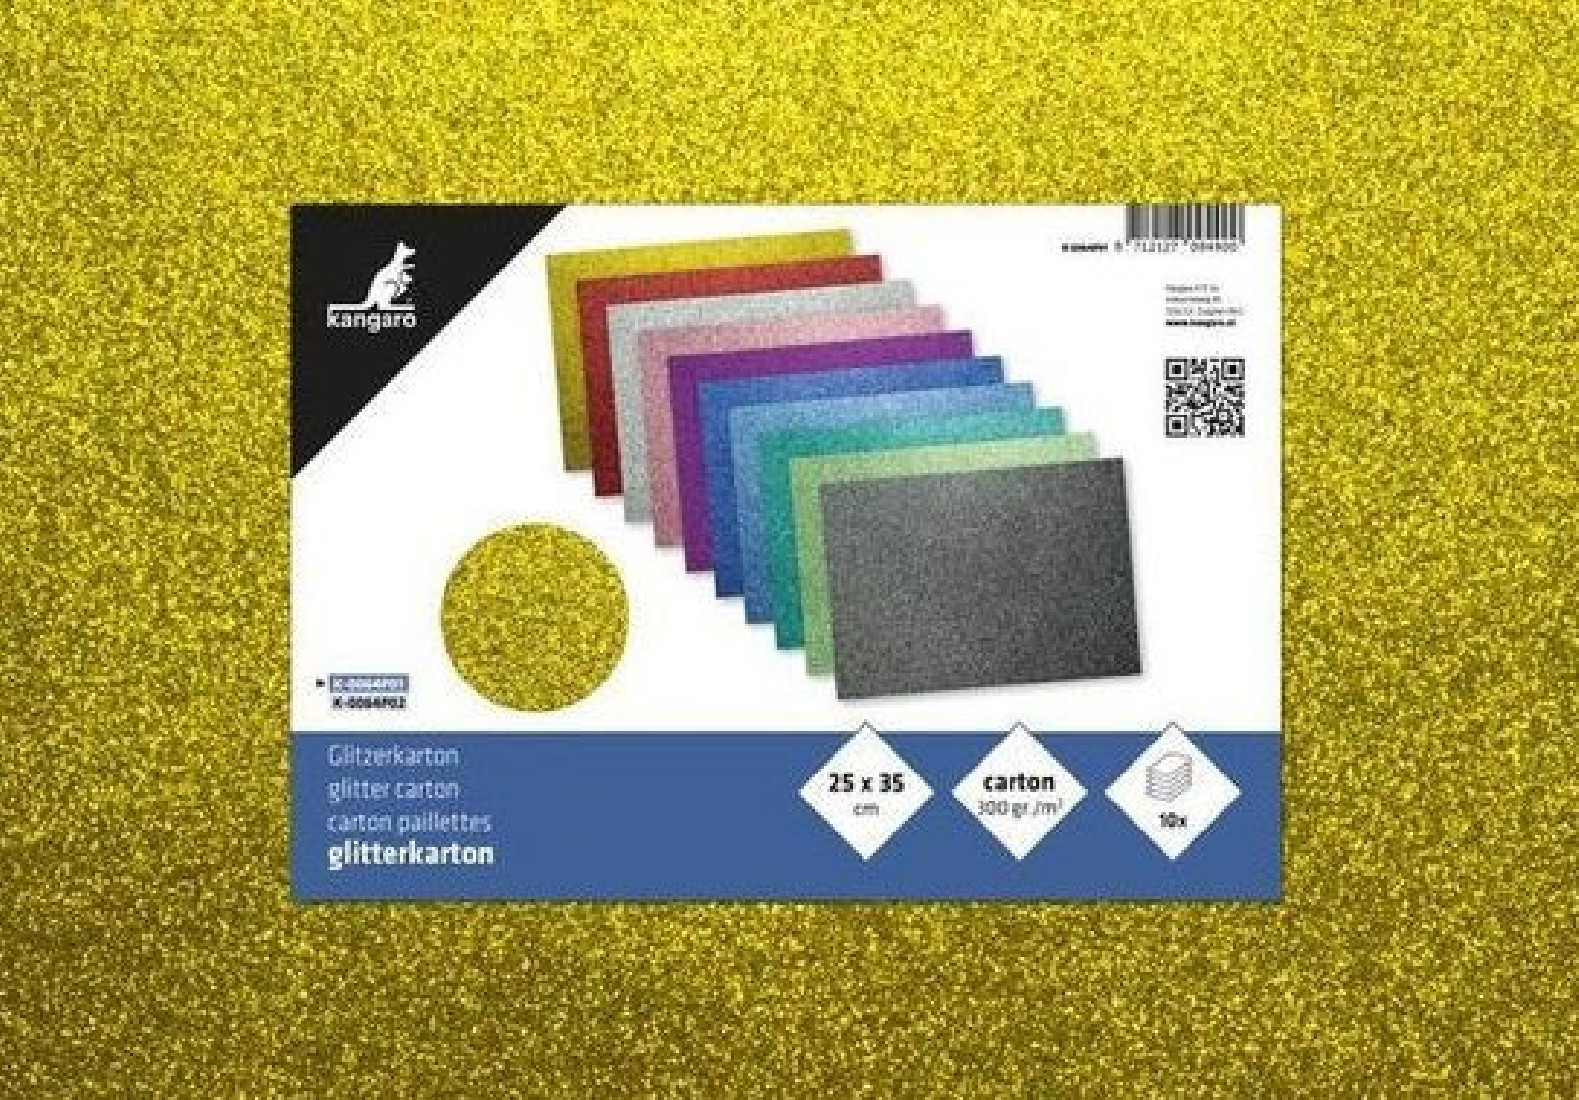 Χαρτόνι Glitter 25x35 Πακέτο 10 Φύλλα Κ-0064P01 Kangaroo